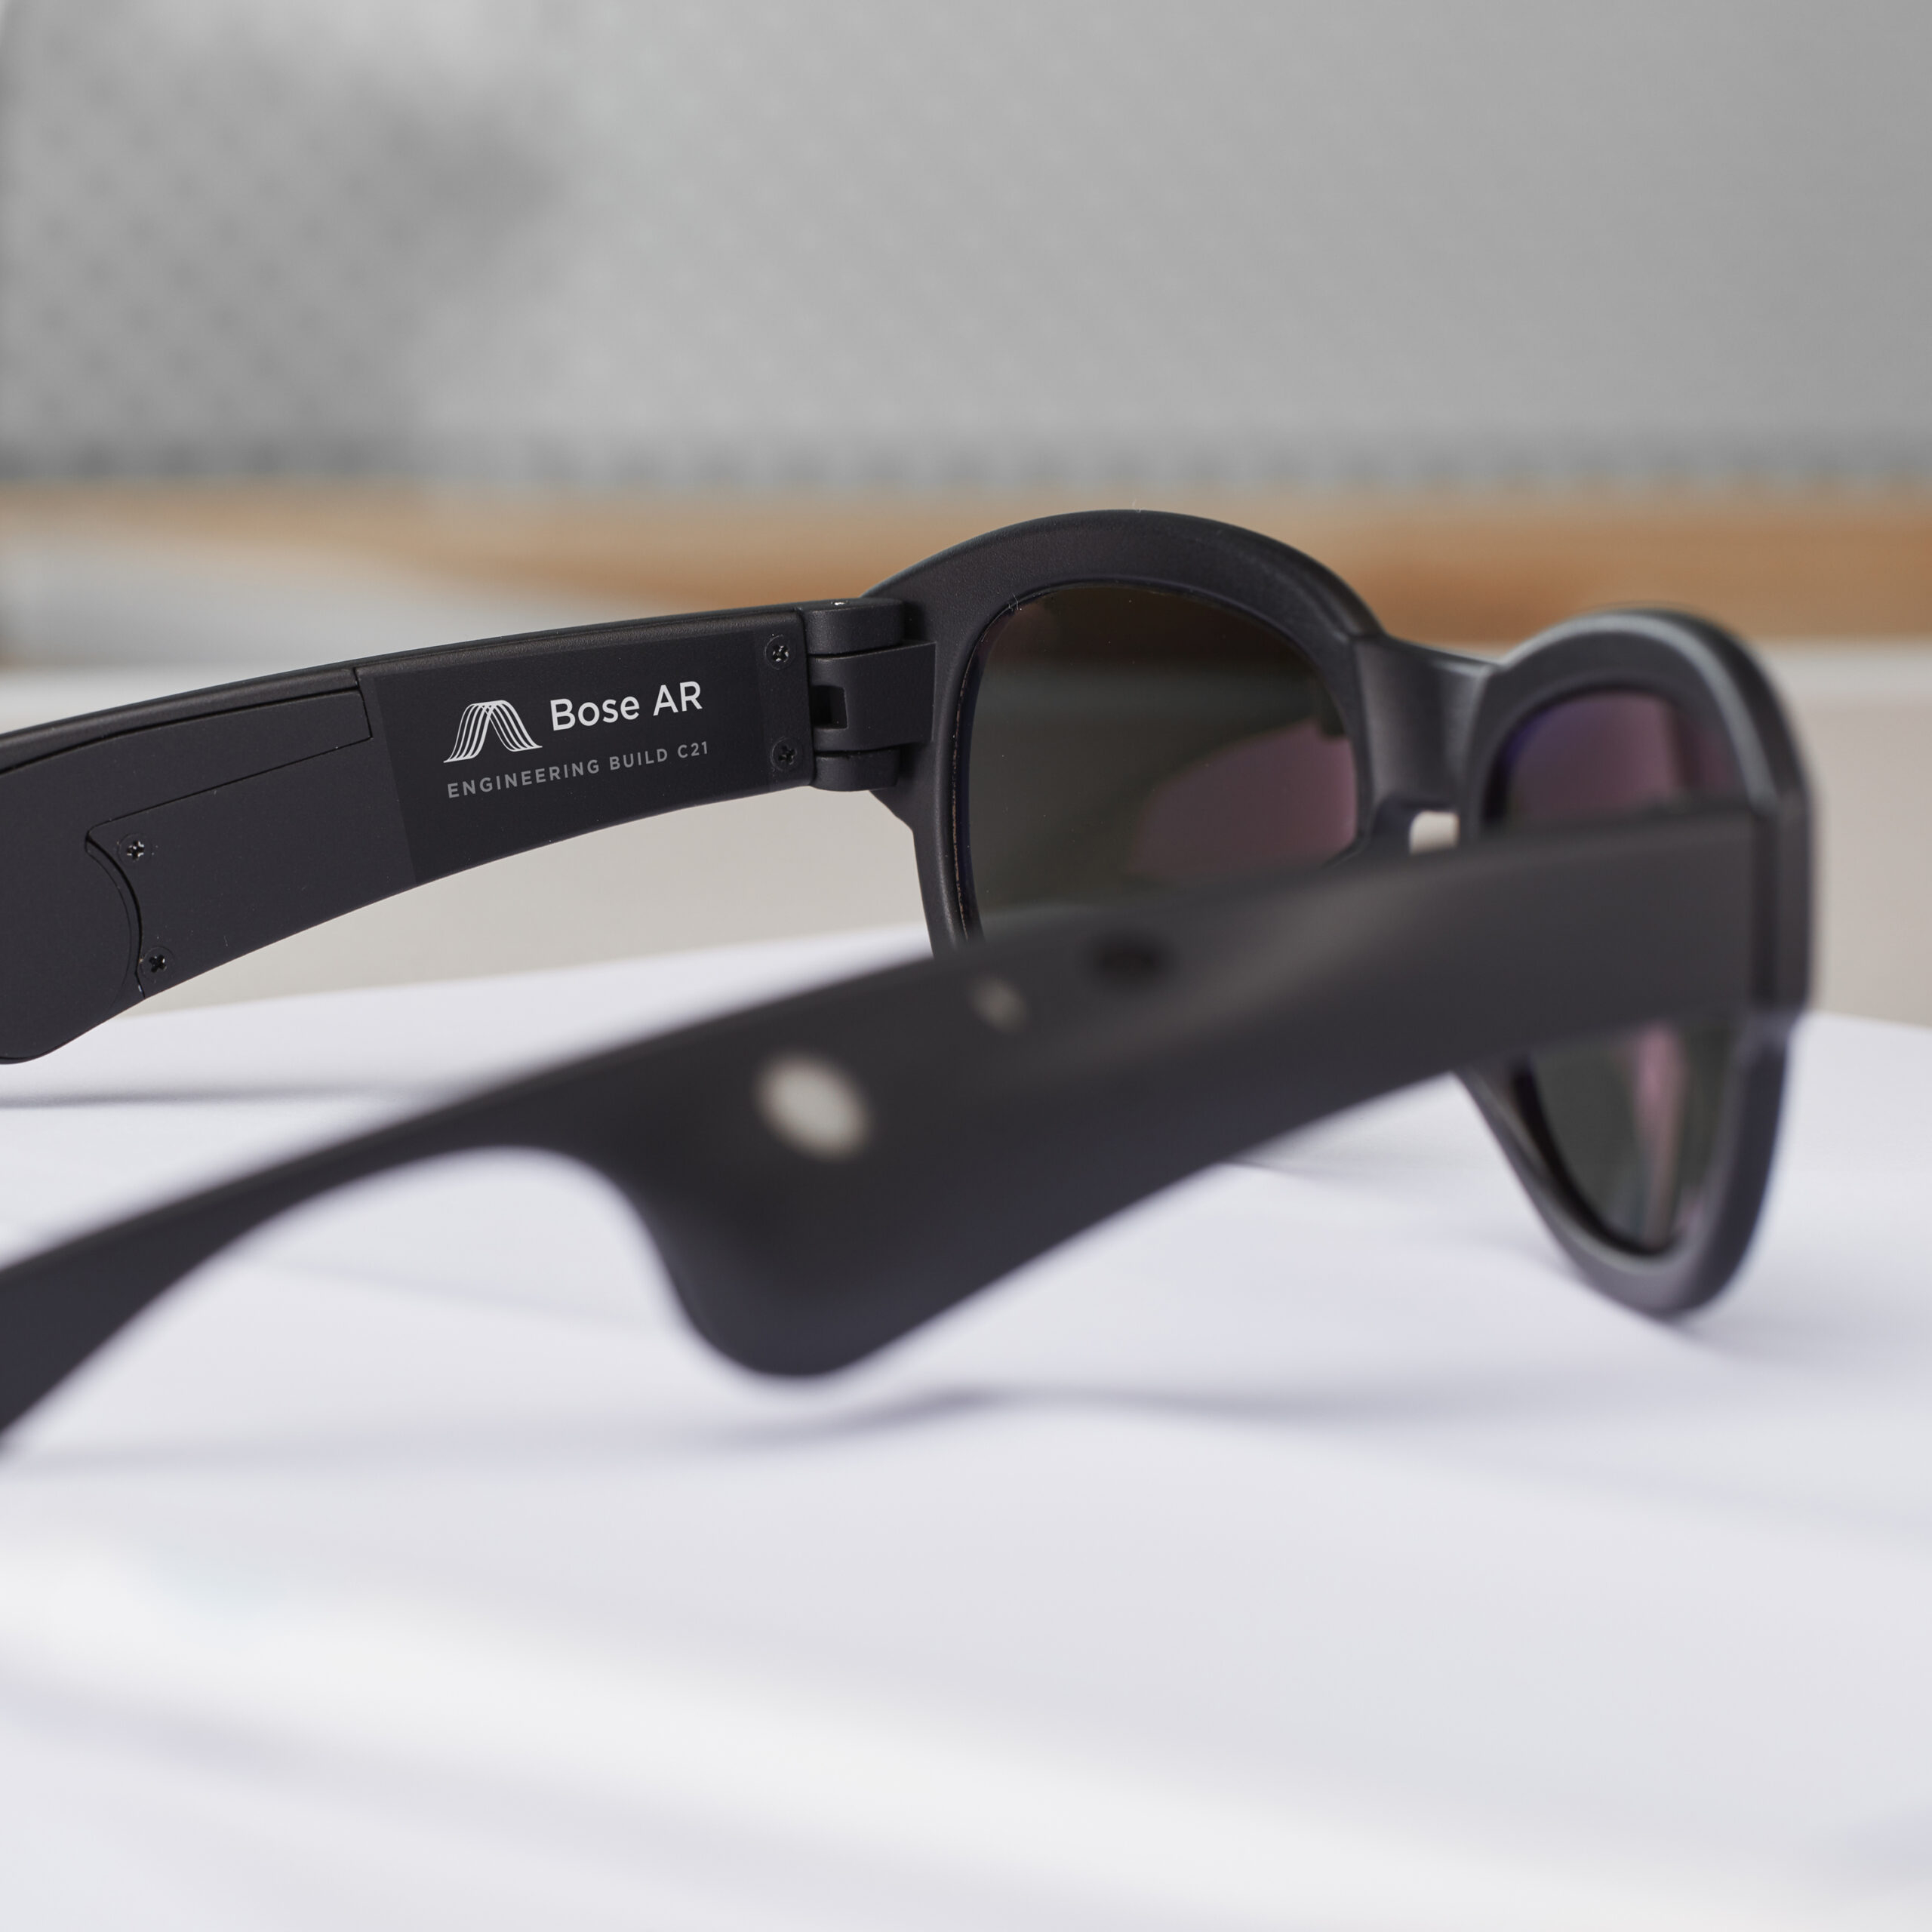 Solglasögon med AR från Bose